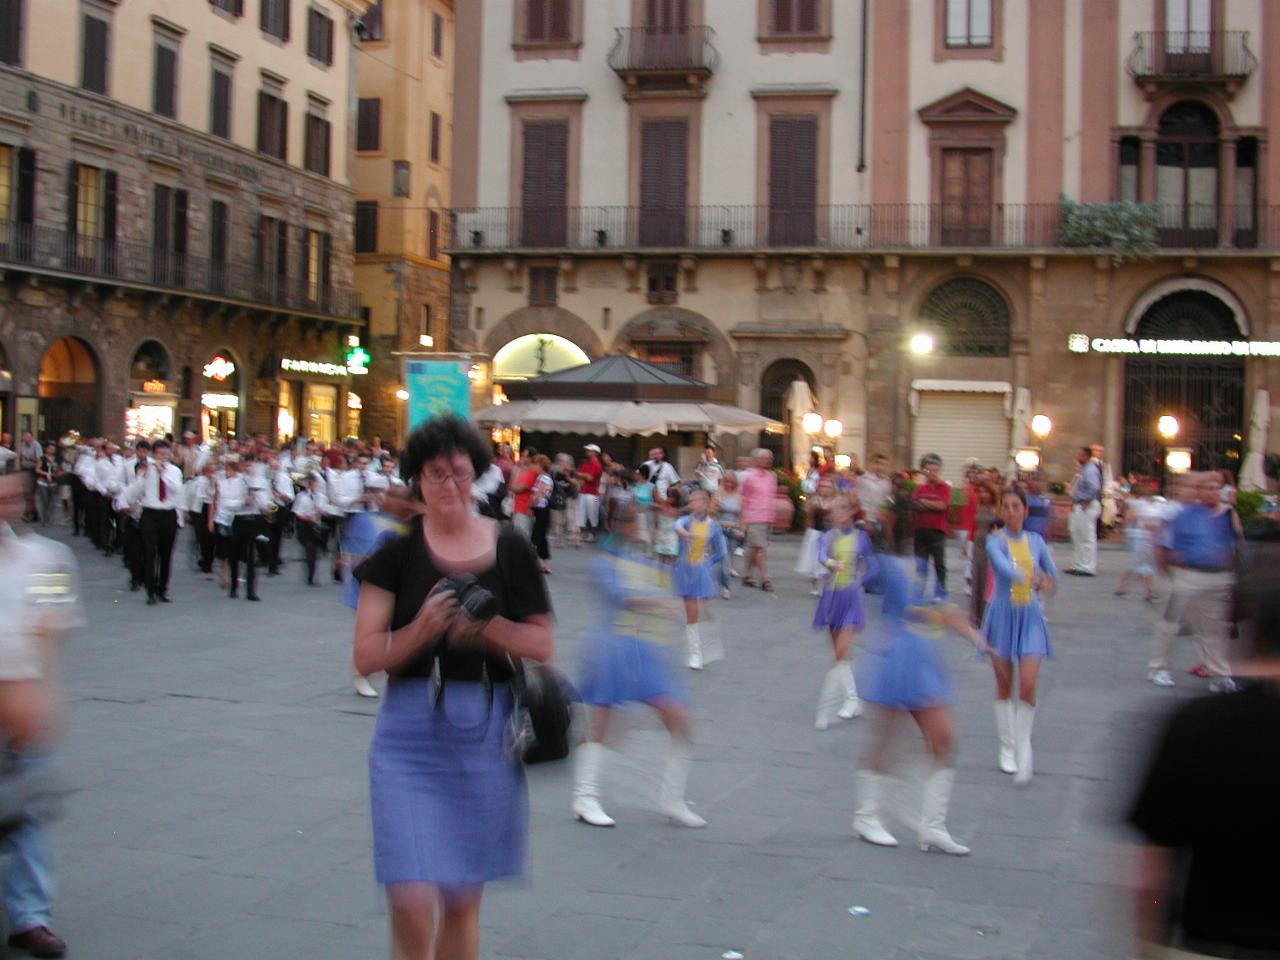 Band arriving in Piazza della Signoria